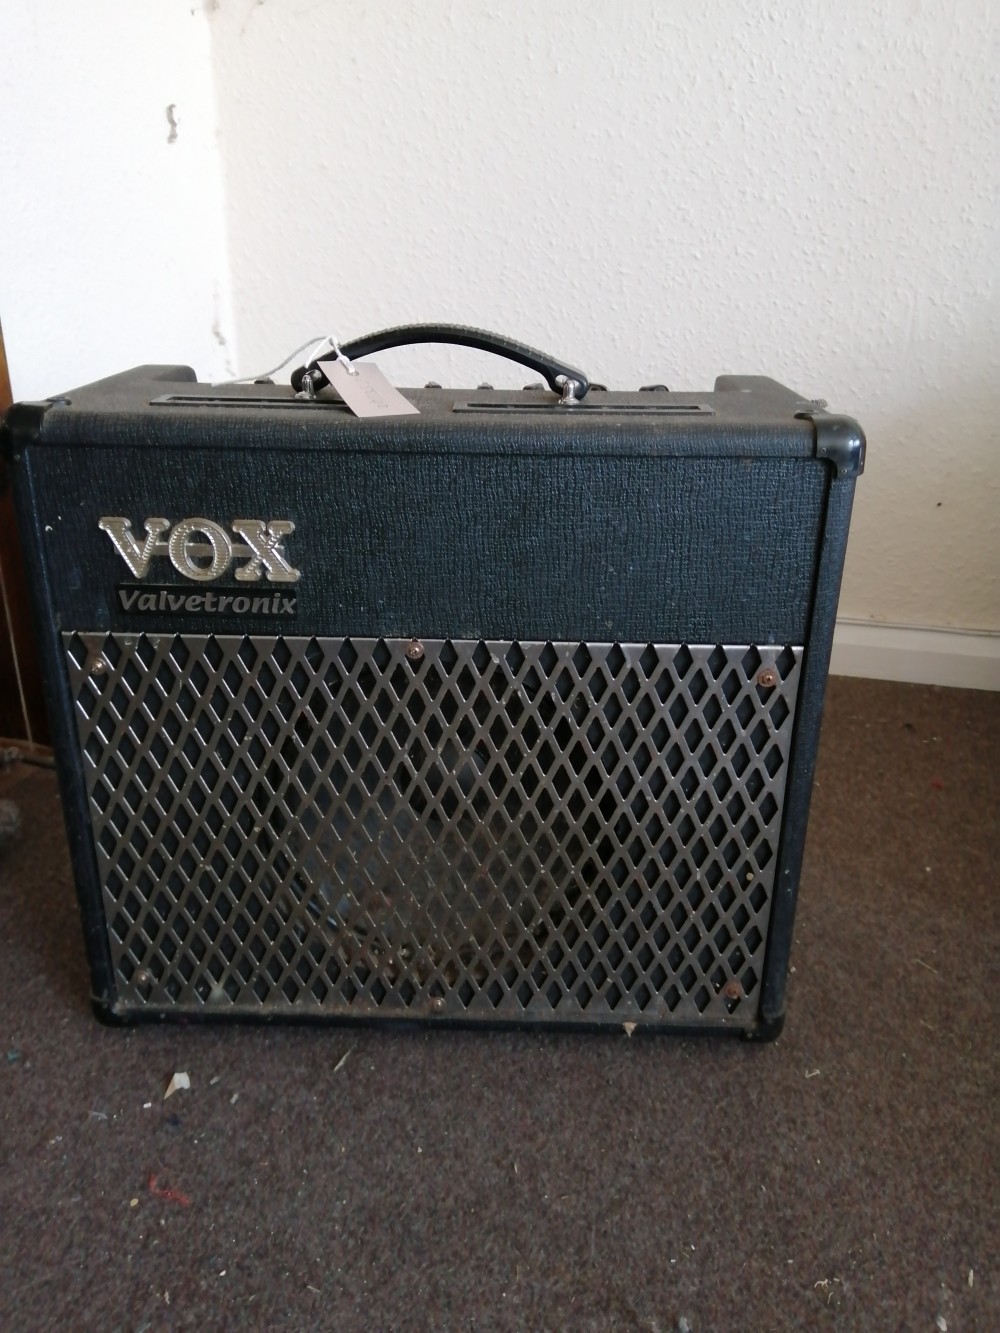 A Vox Valvetronix guitar amp